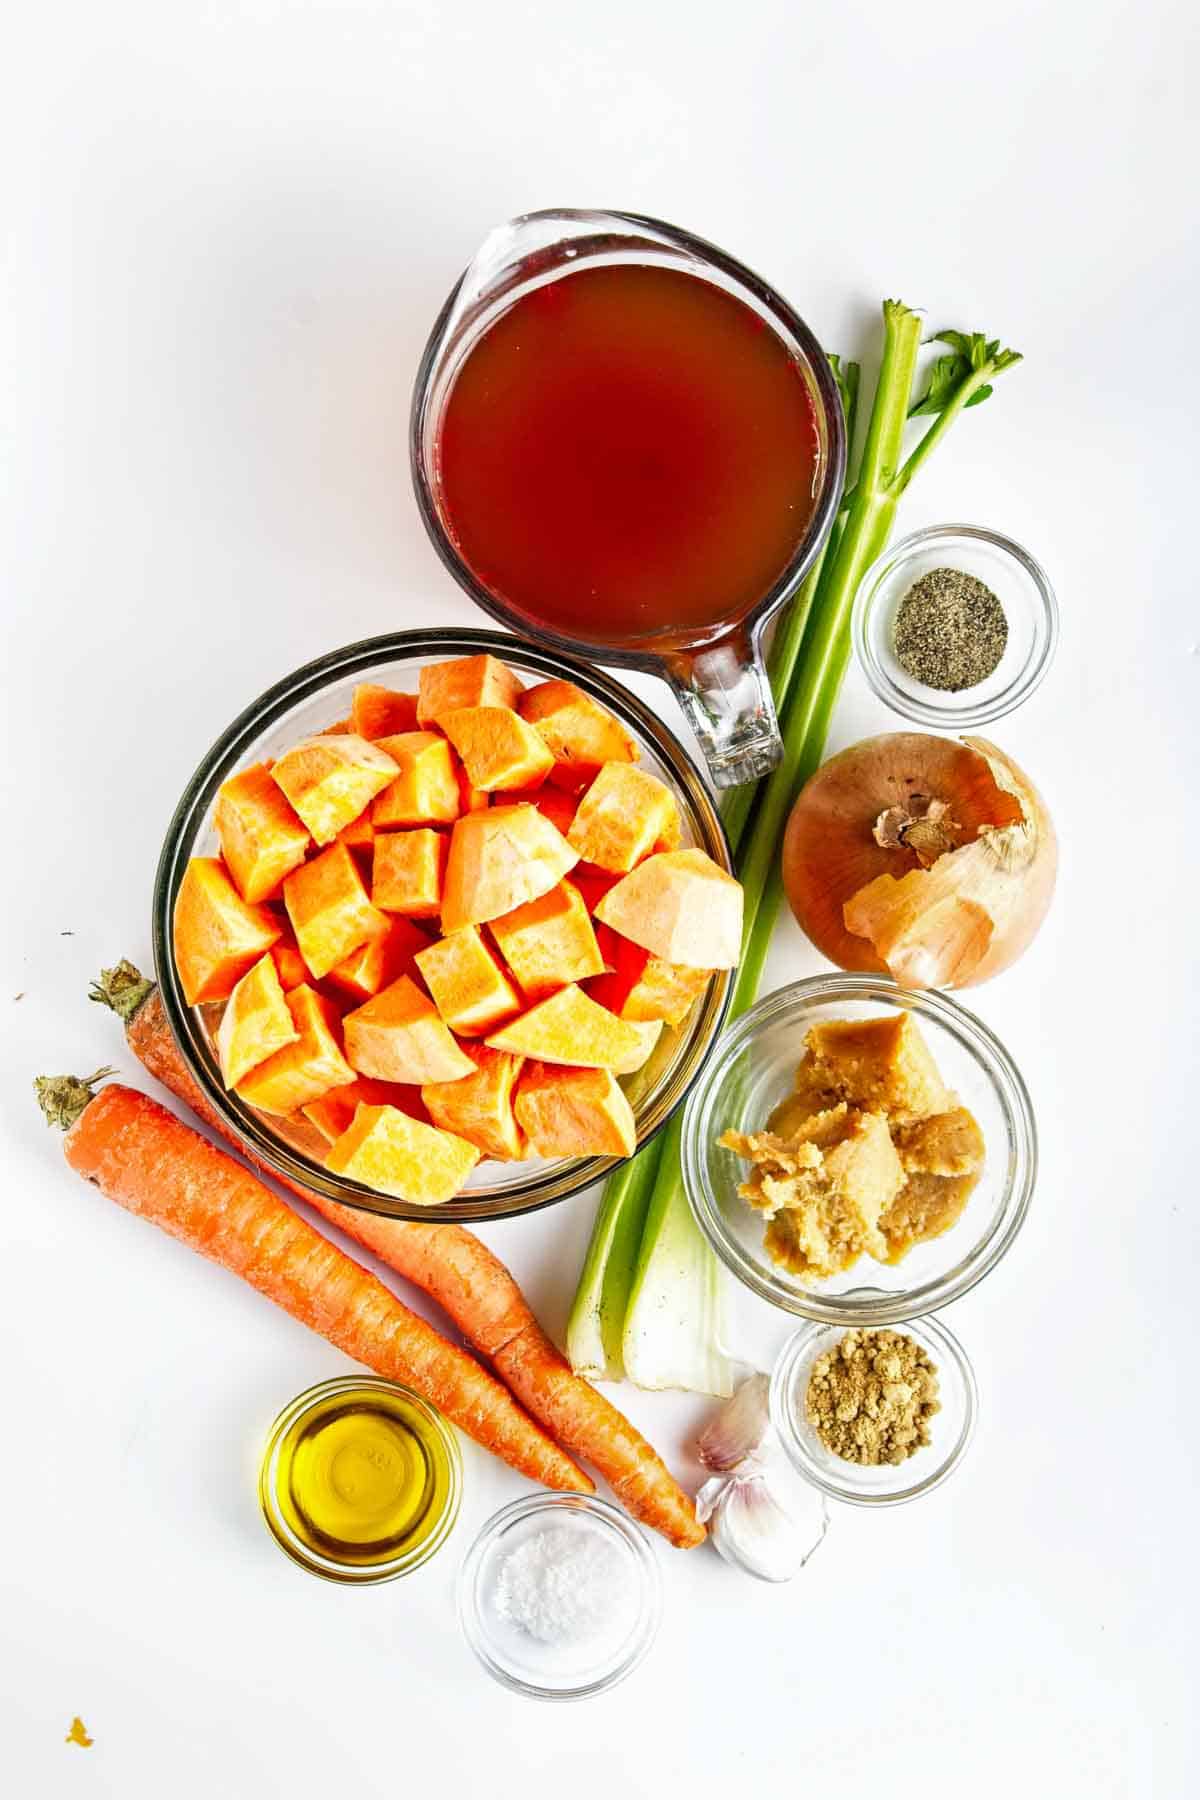 Ingredients to make vegan miso sweet potato soup